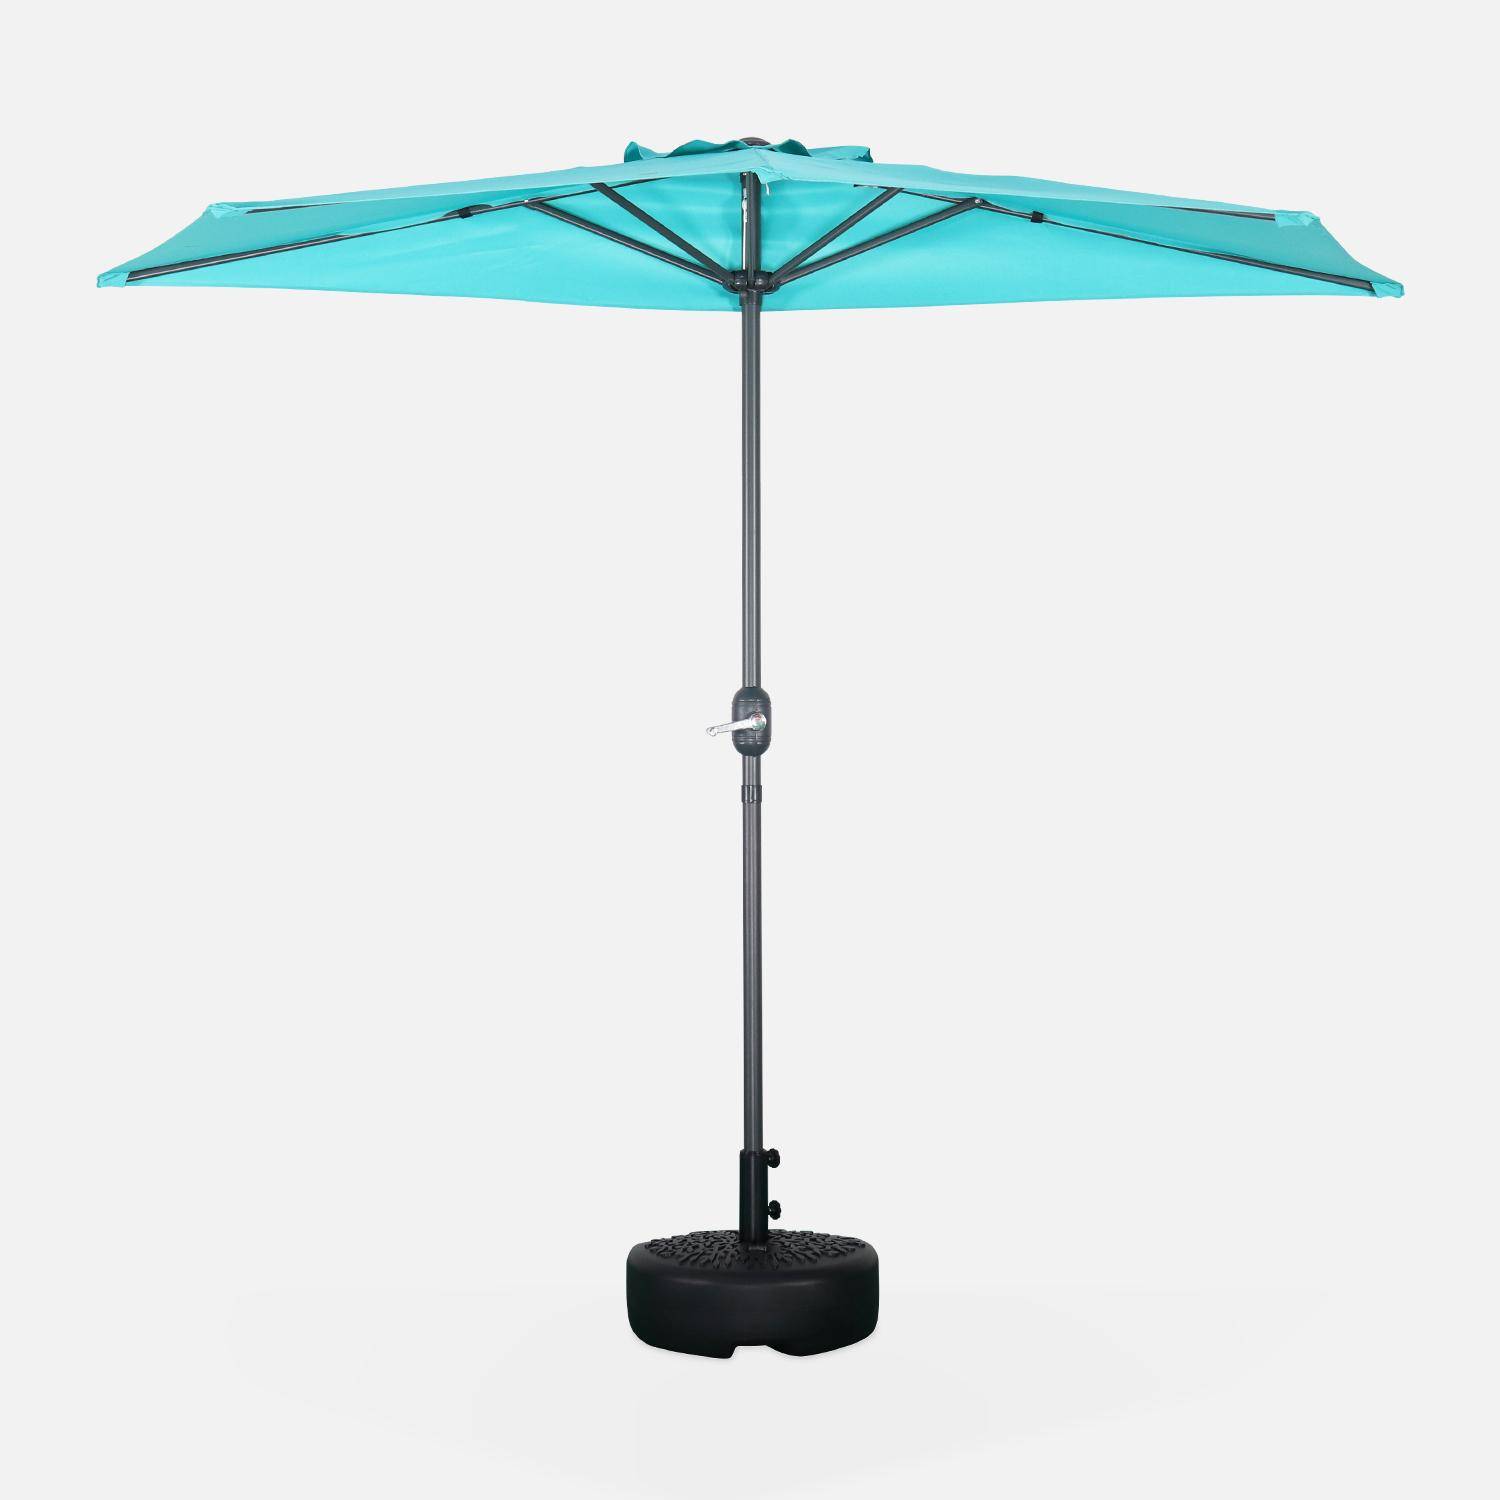  Parasol de balcon Ø250cm  – CALVI – Demi-parasol droit, mât en aluminium avec manivelle d’ouverture, toile turquoise Photo2